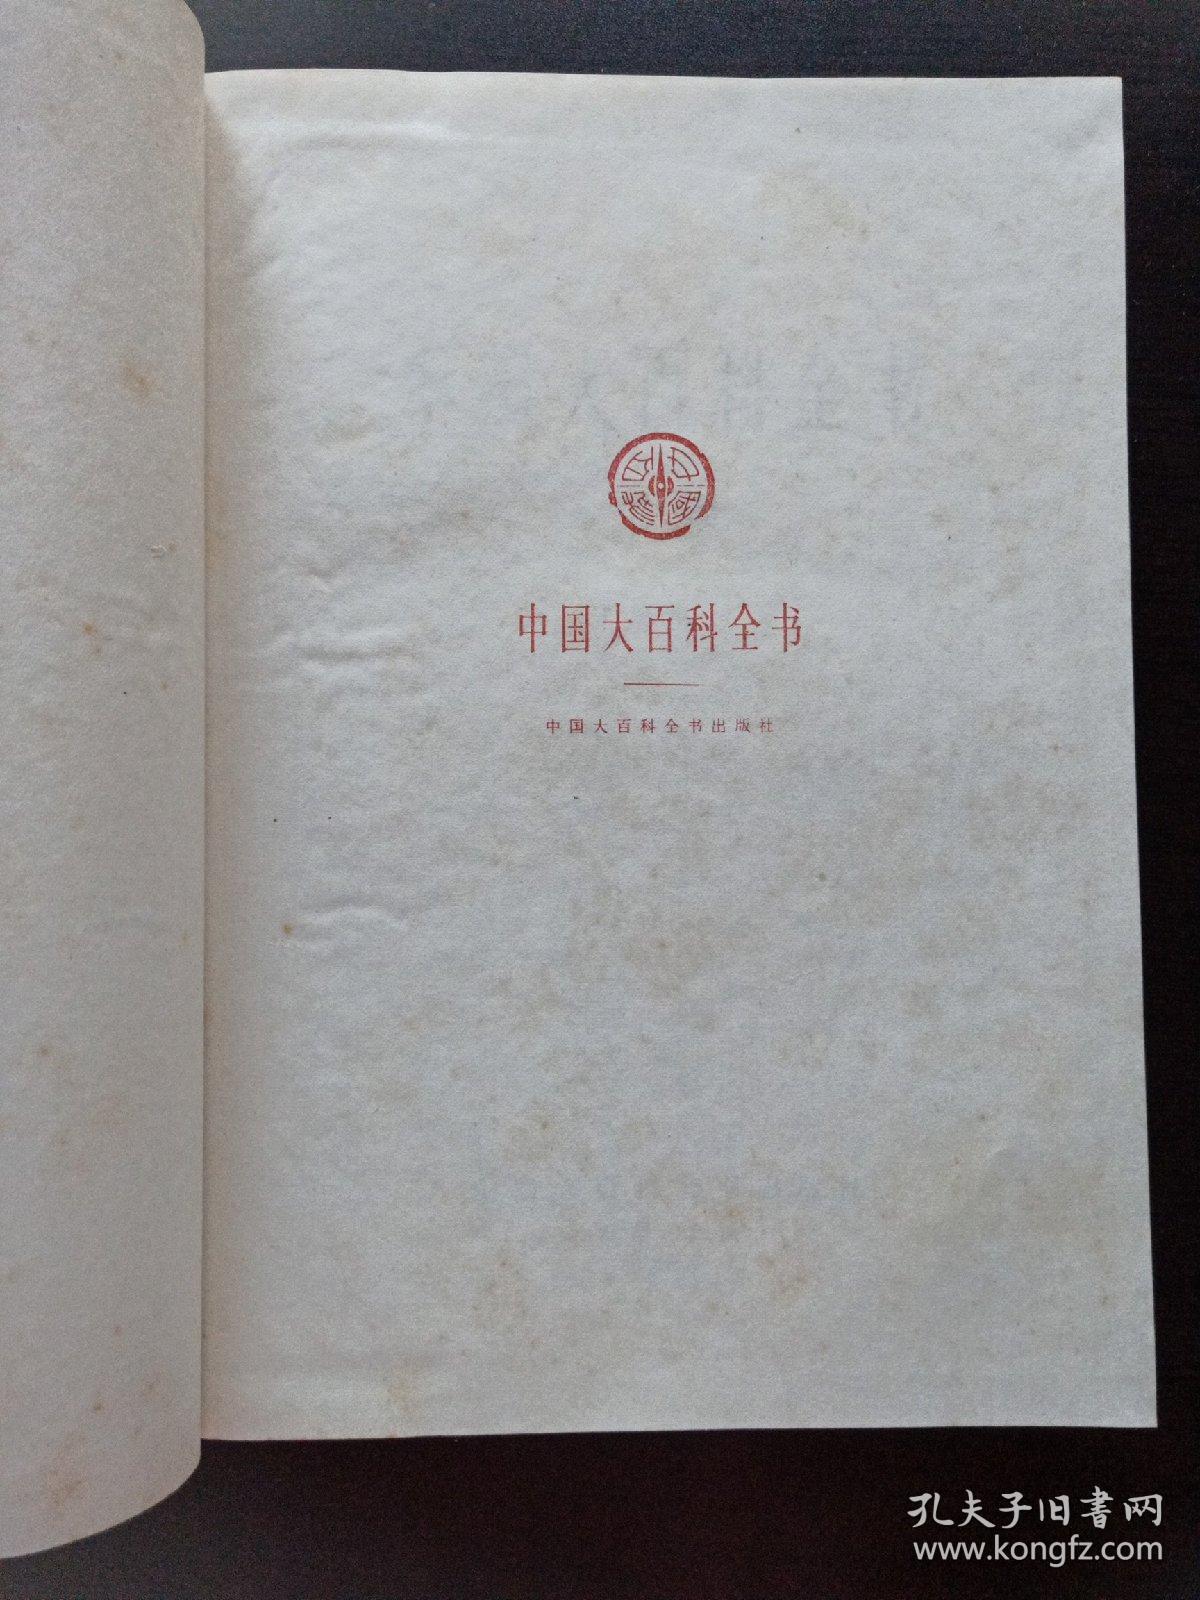 中国大百科全书宗教乙种